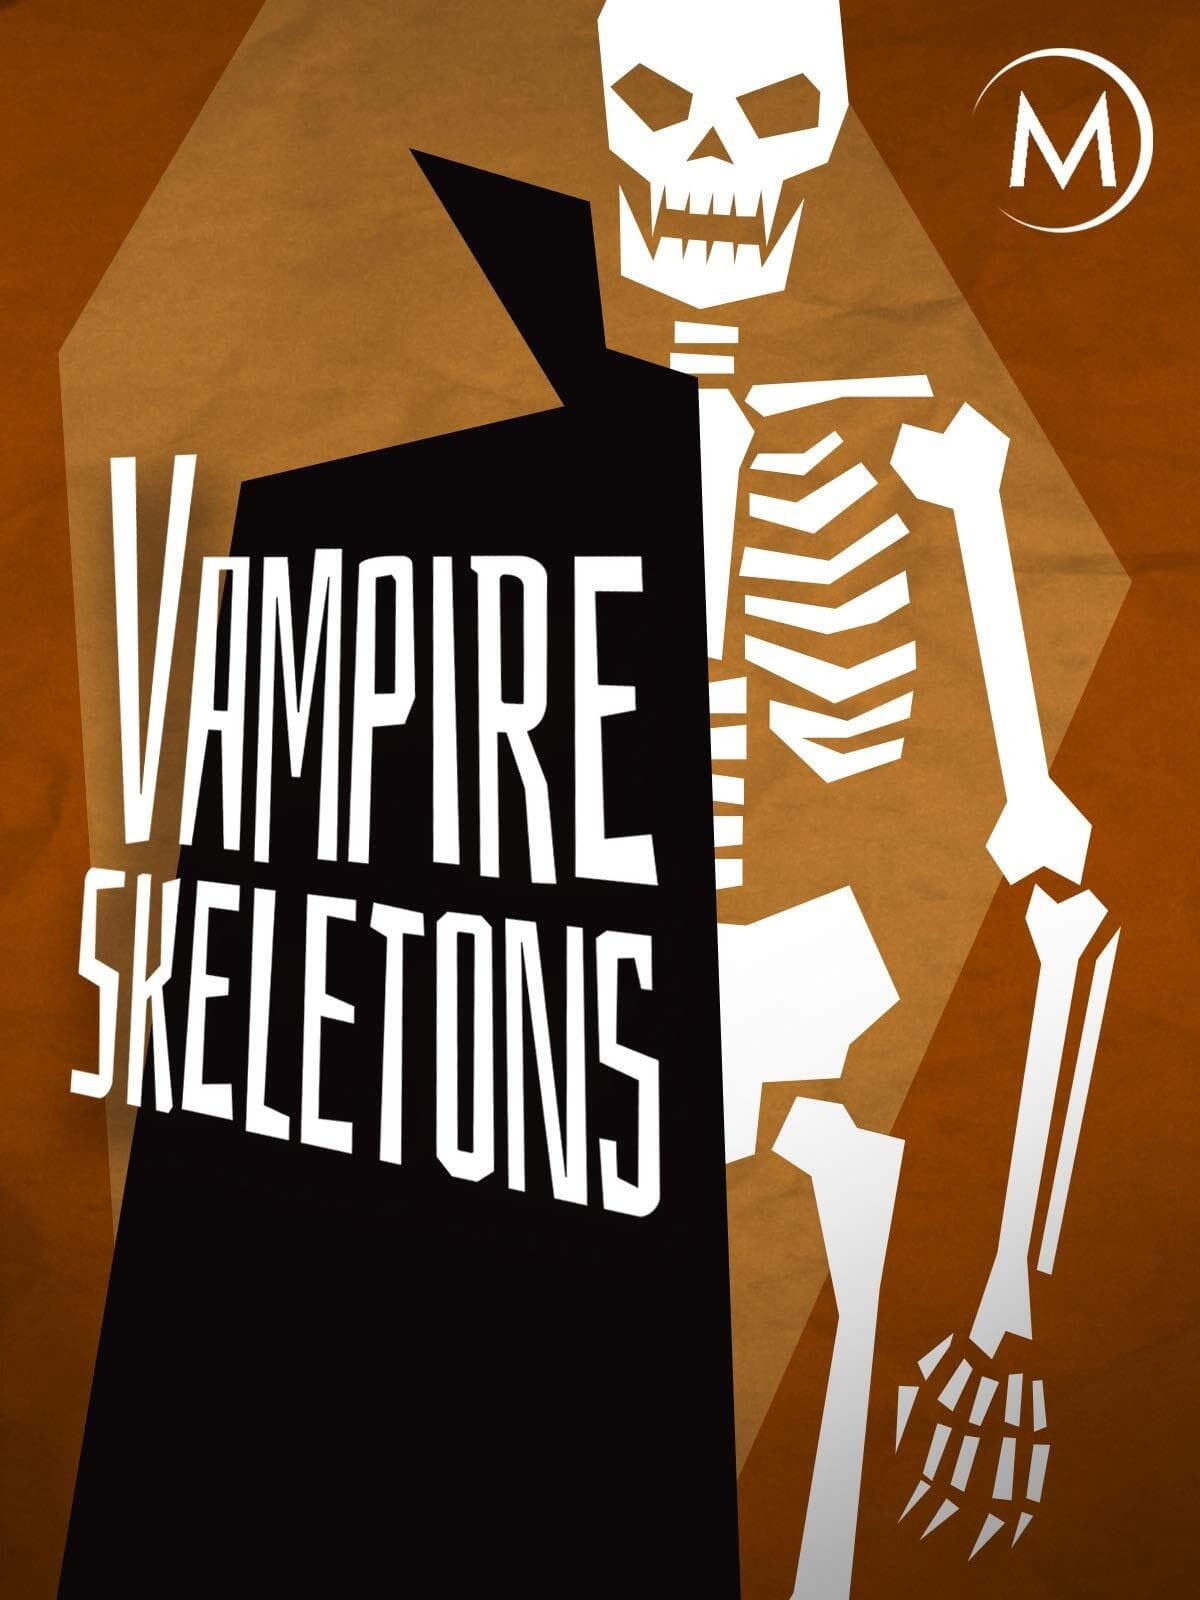 Vampire Skeletons